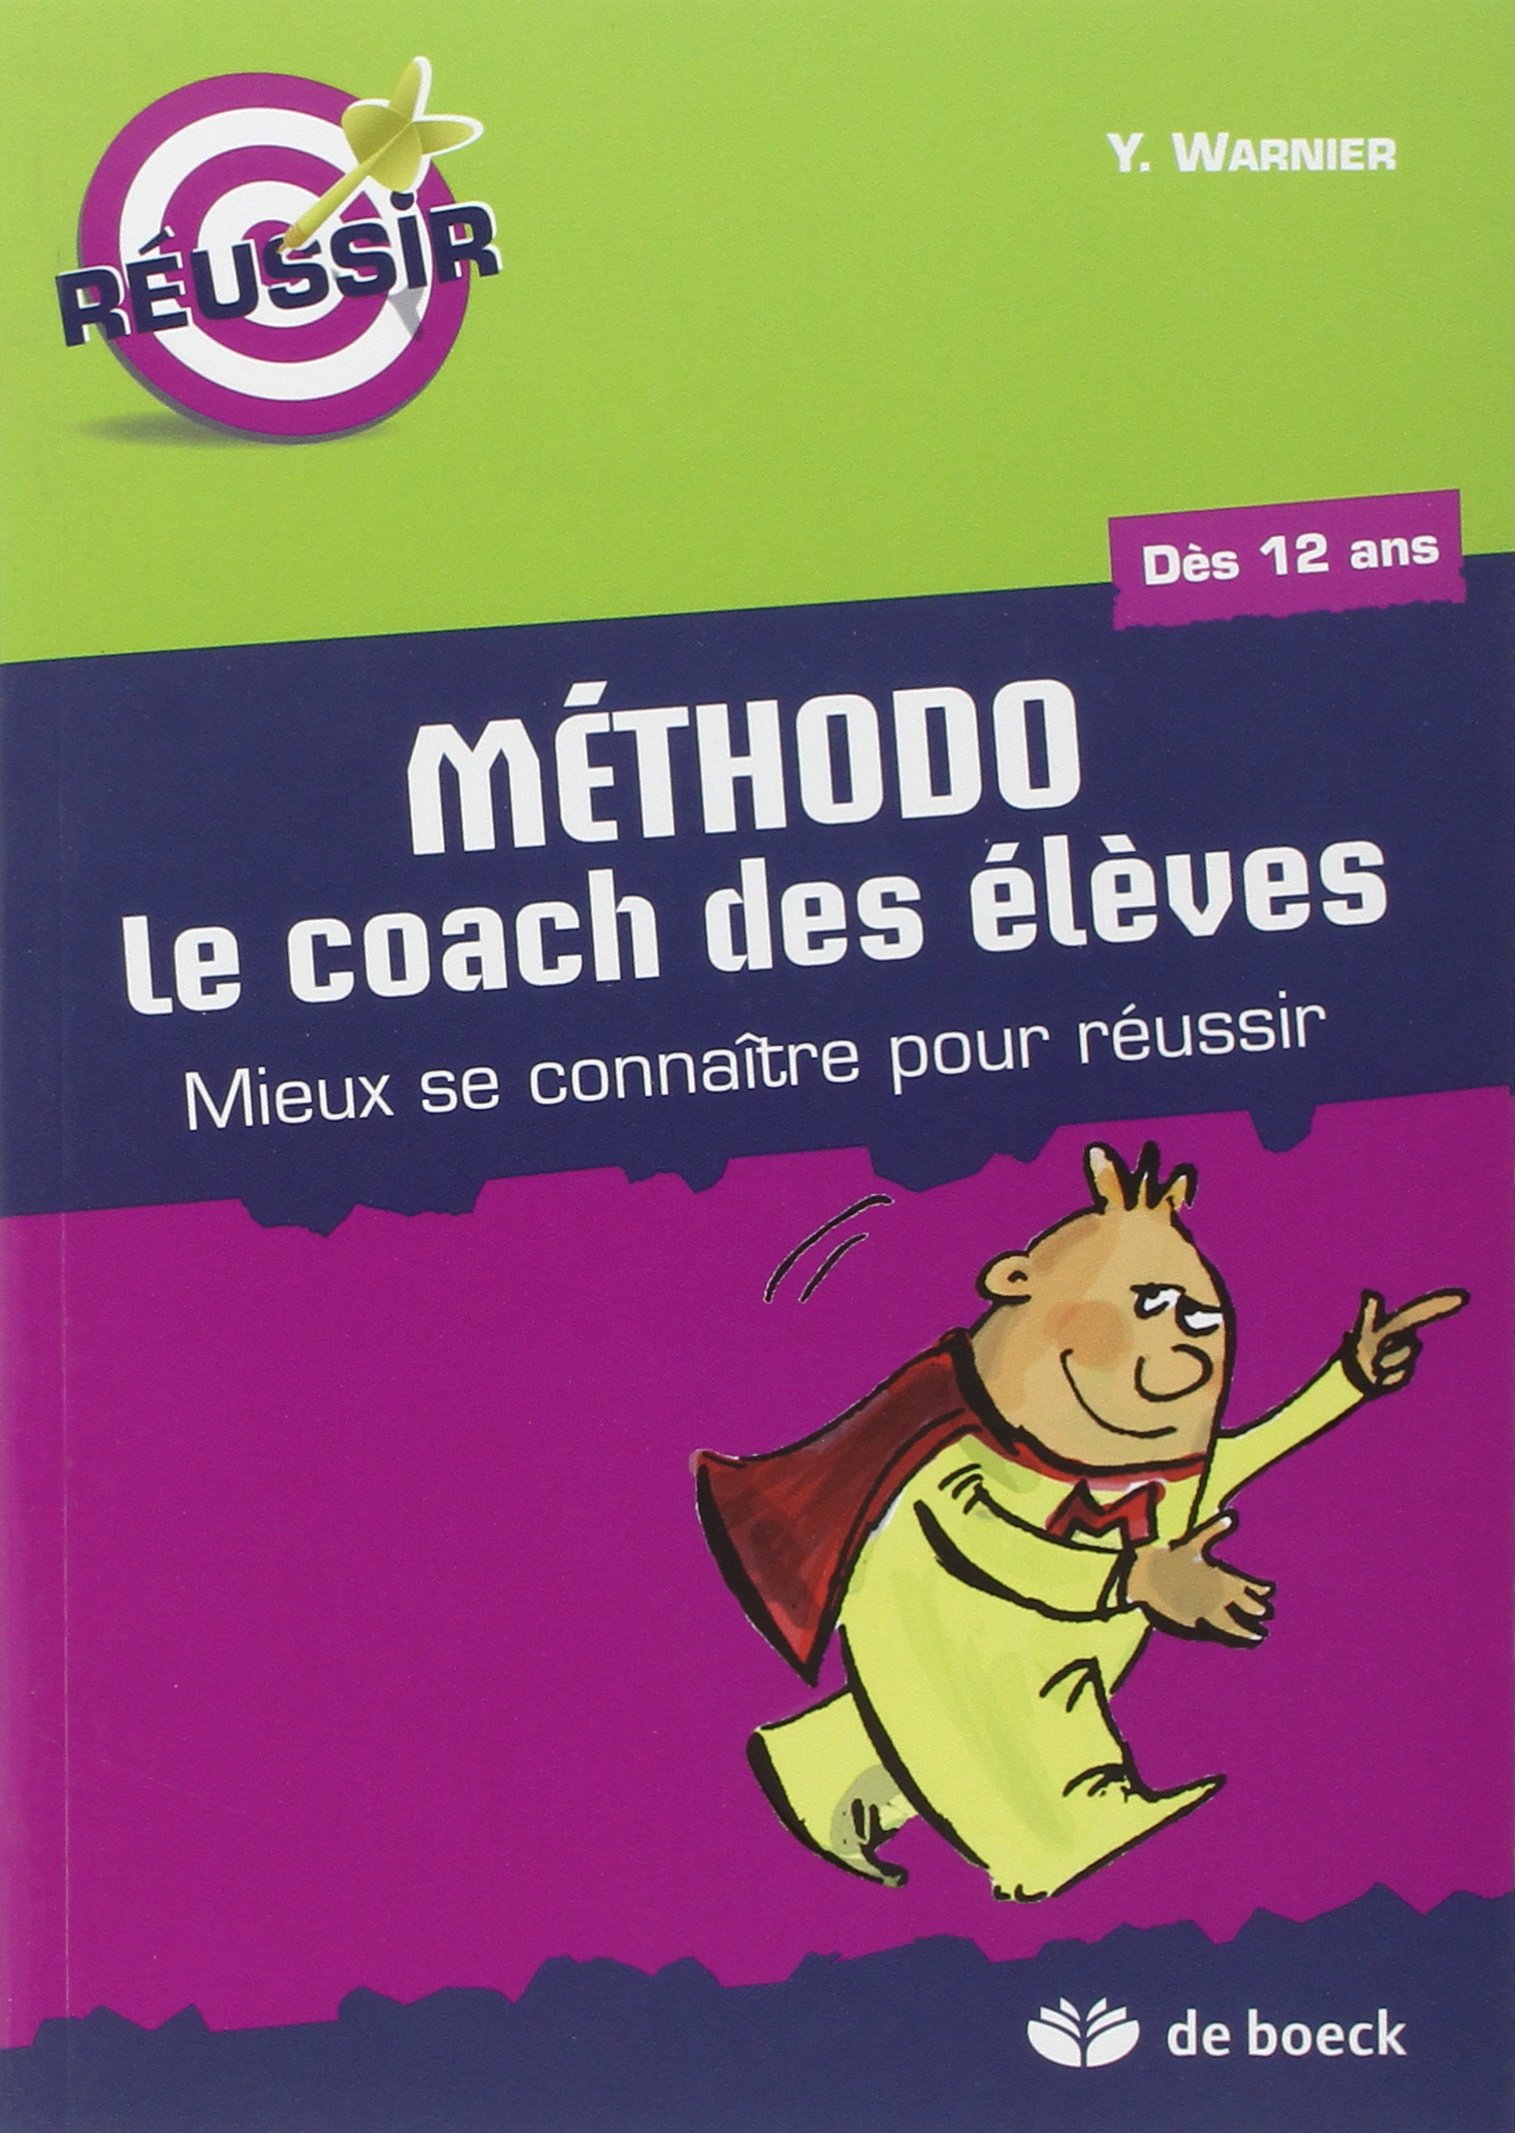 Les nouveaux programmes Coaching-Pour-Reussir